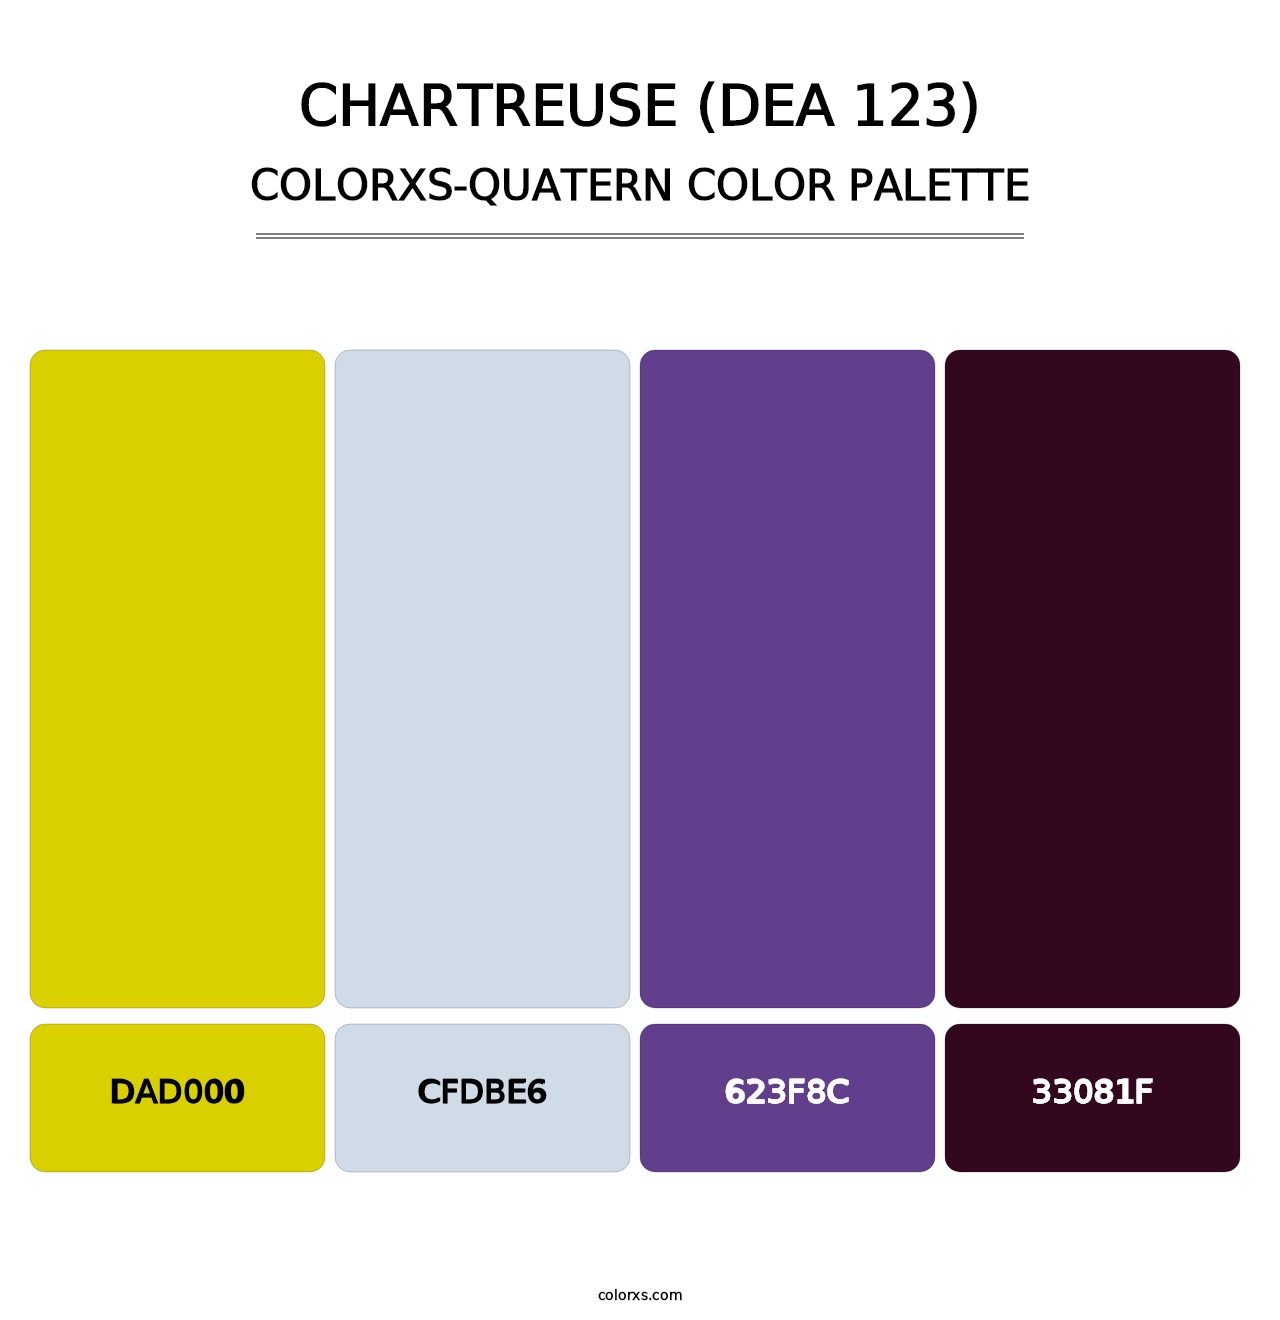 Chartreuse (DEA 123) - Colorxs Quatern Palette